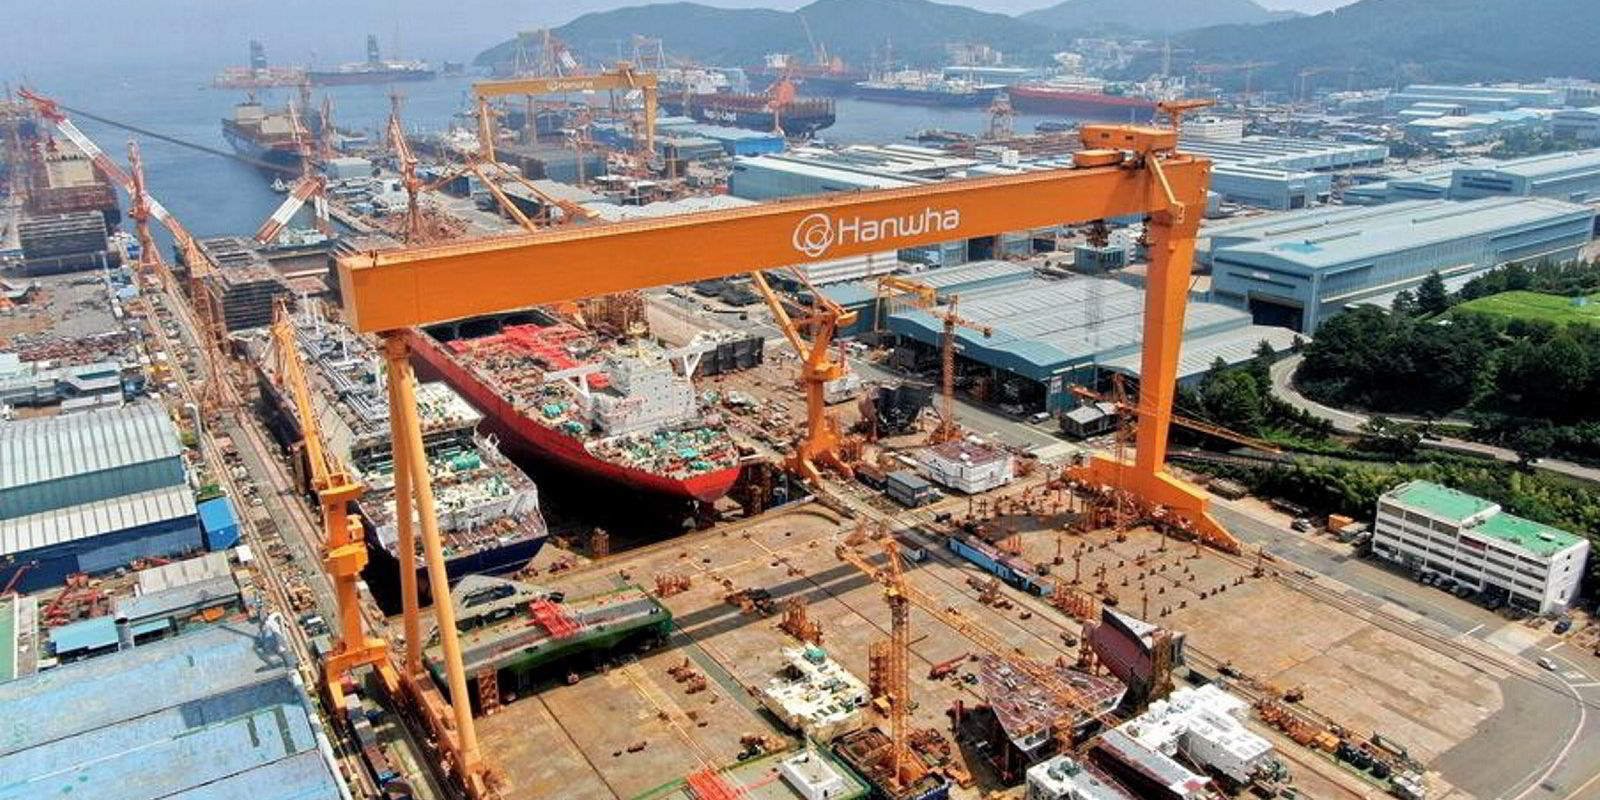 حوض بناء السفن التابع لشركة هانهوا أوشن